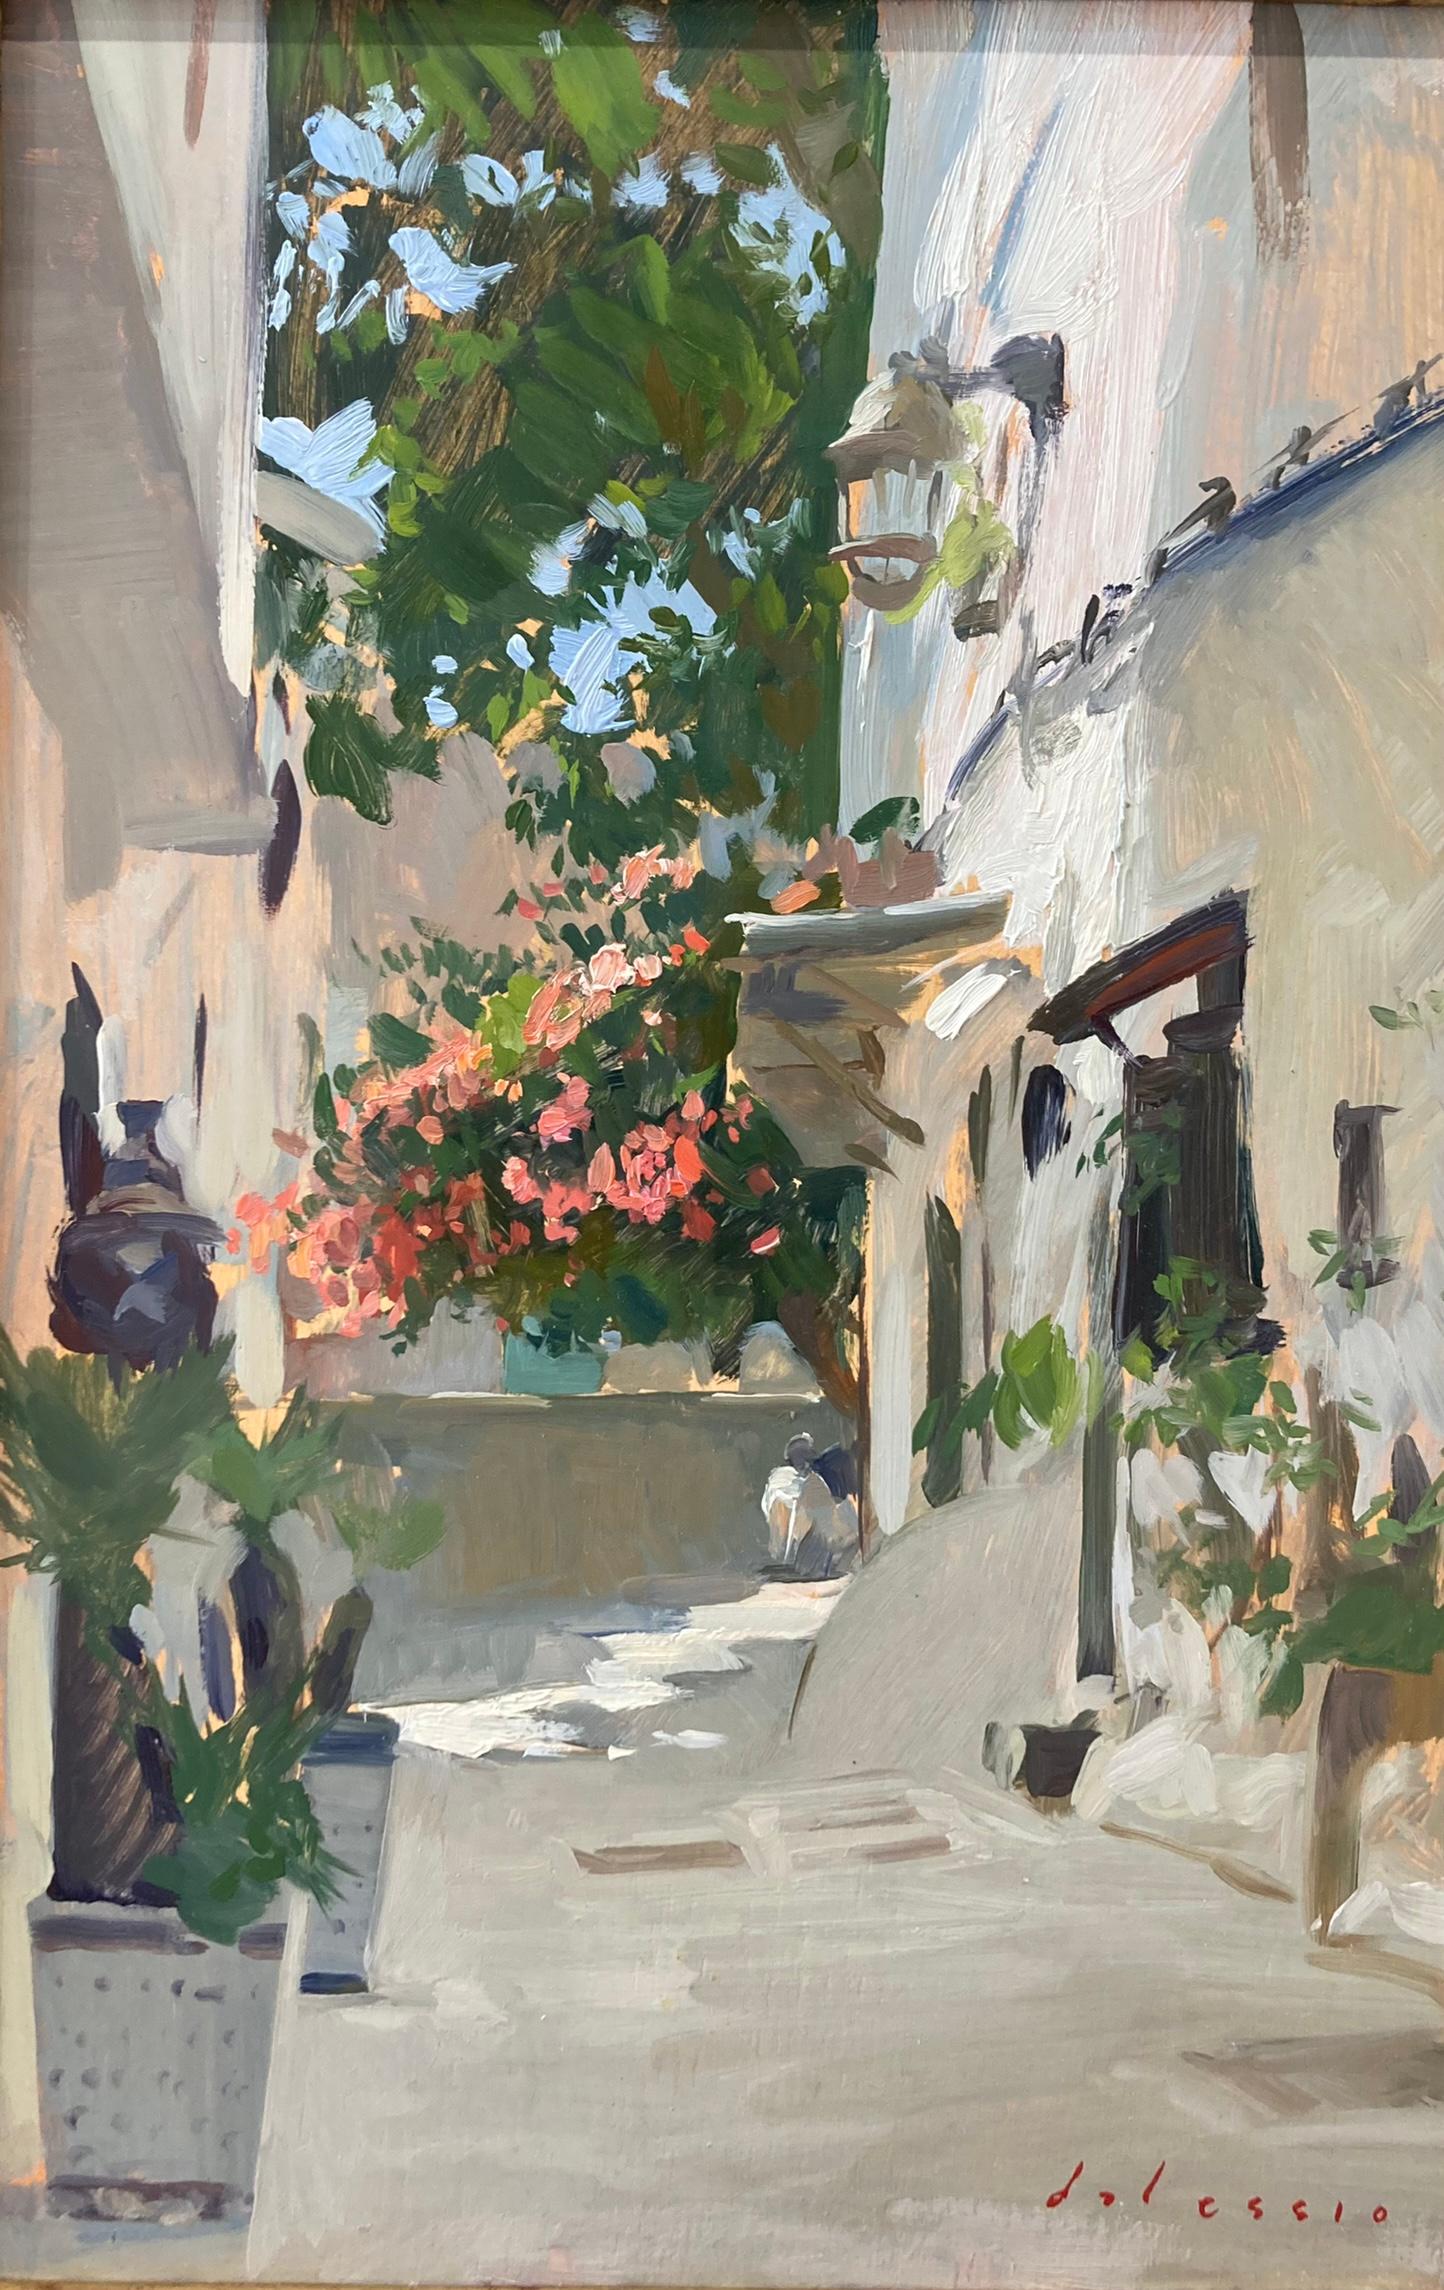 « Tangiers », scène lumineuse d'une rue calme et colorée peinte en plein air 